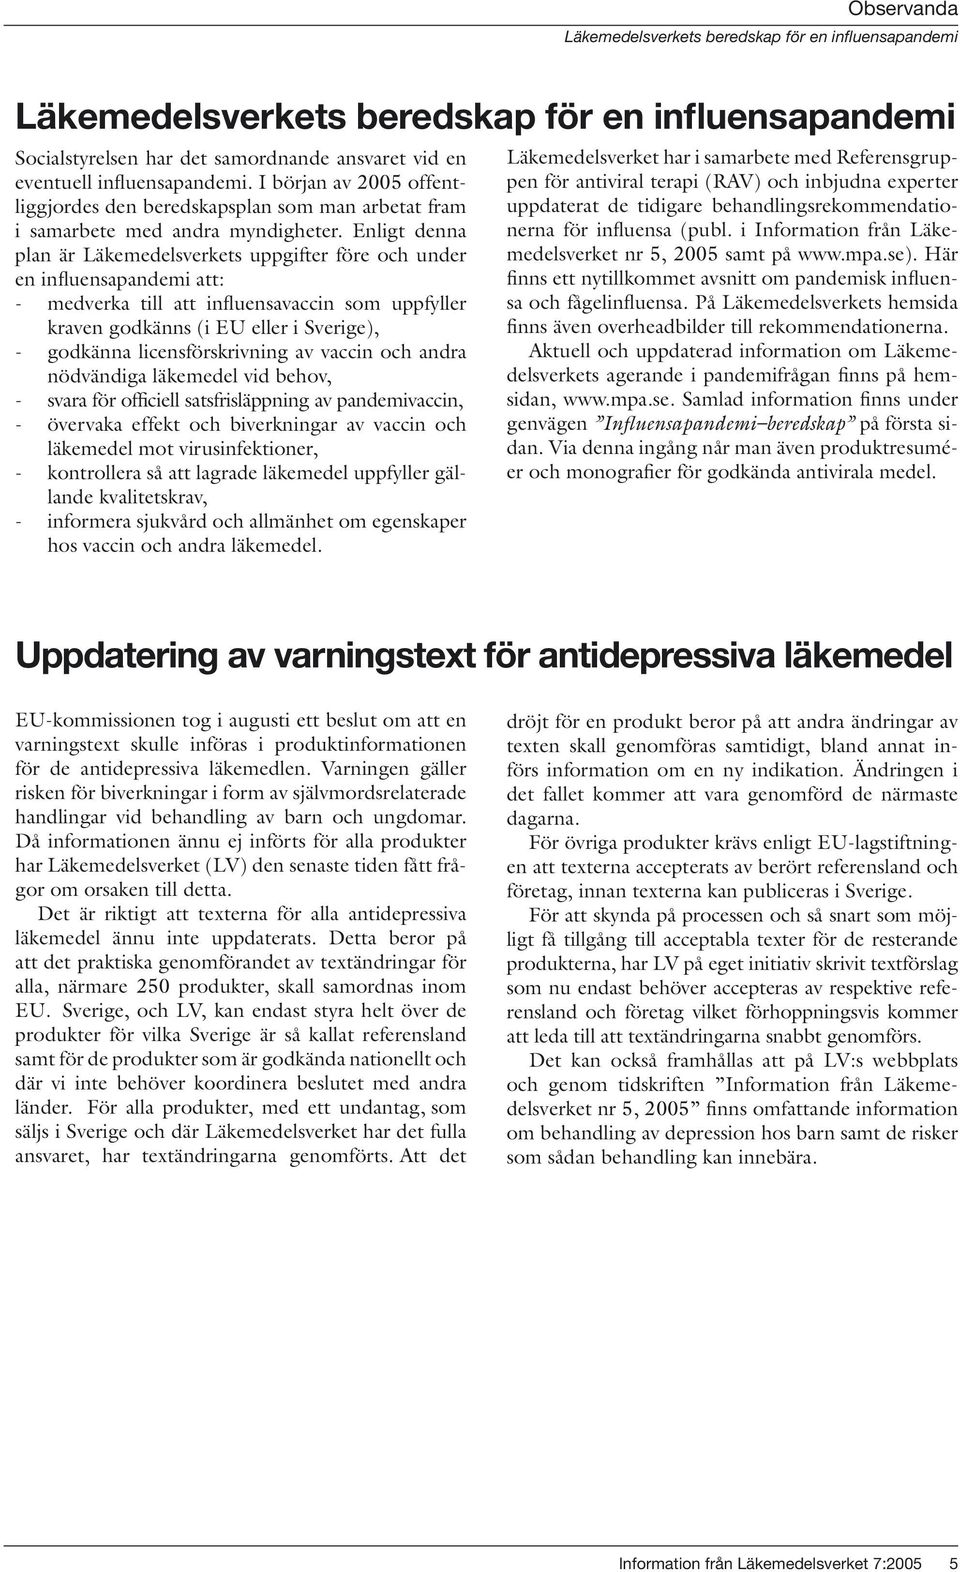 Enligt denna plan är Läkemedelsverkets uppgifter före och under en influensapandemi att: - medverka till att influensavaccin som uppfyller kraven godkänns (i EU eller i Sverige), - godkänna